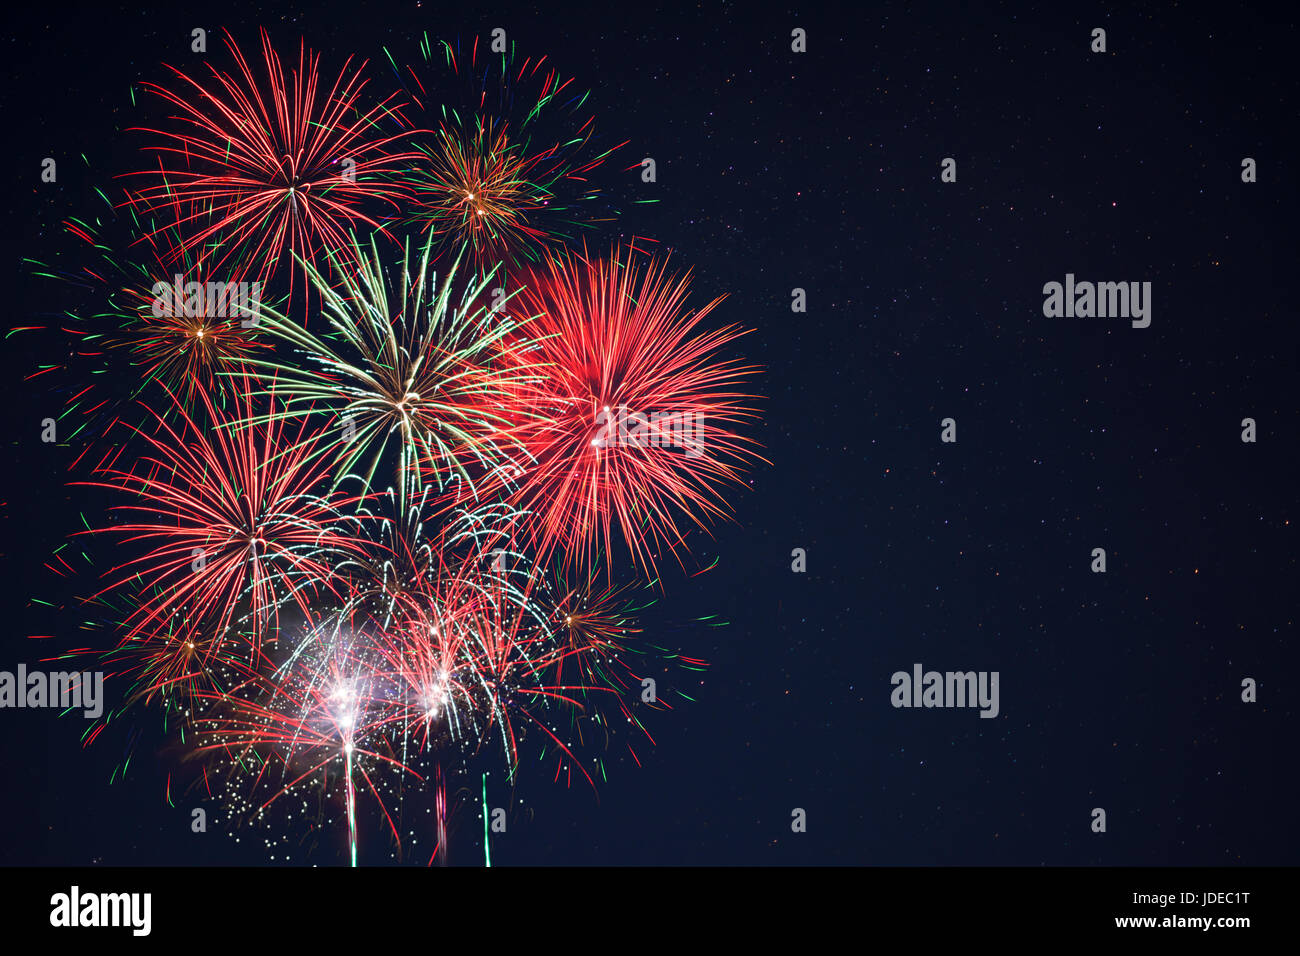 Belle rouge vert jaune celebration fireworks situé à gauche au ciel nocturne, copiez l'espace. Le jour de l'indépendance, 4 juillet, fêtes de fin d'année salut Banque D'Images